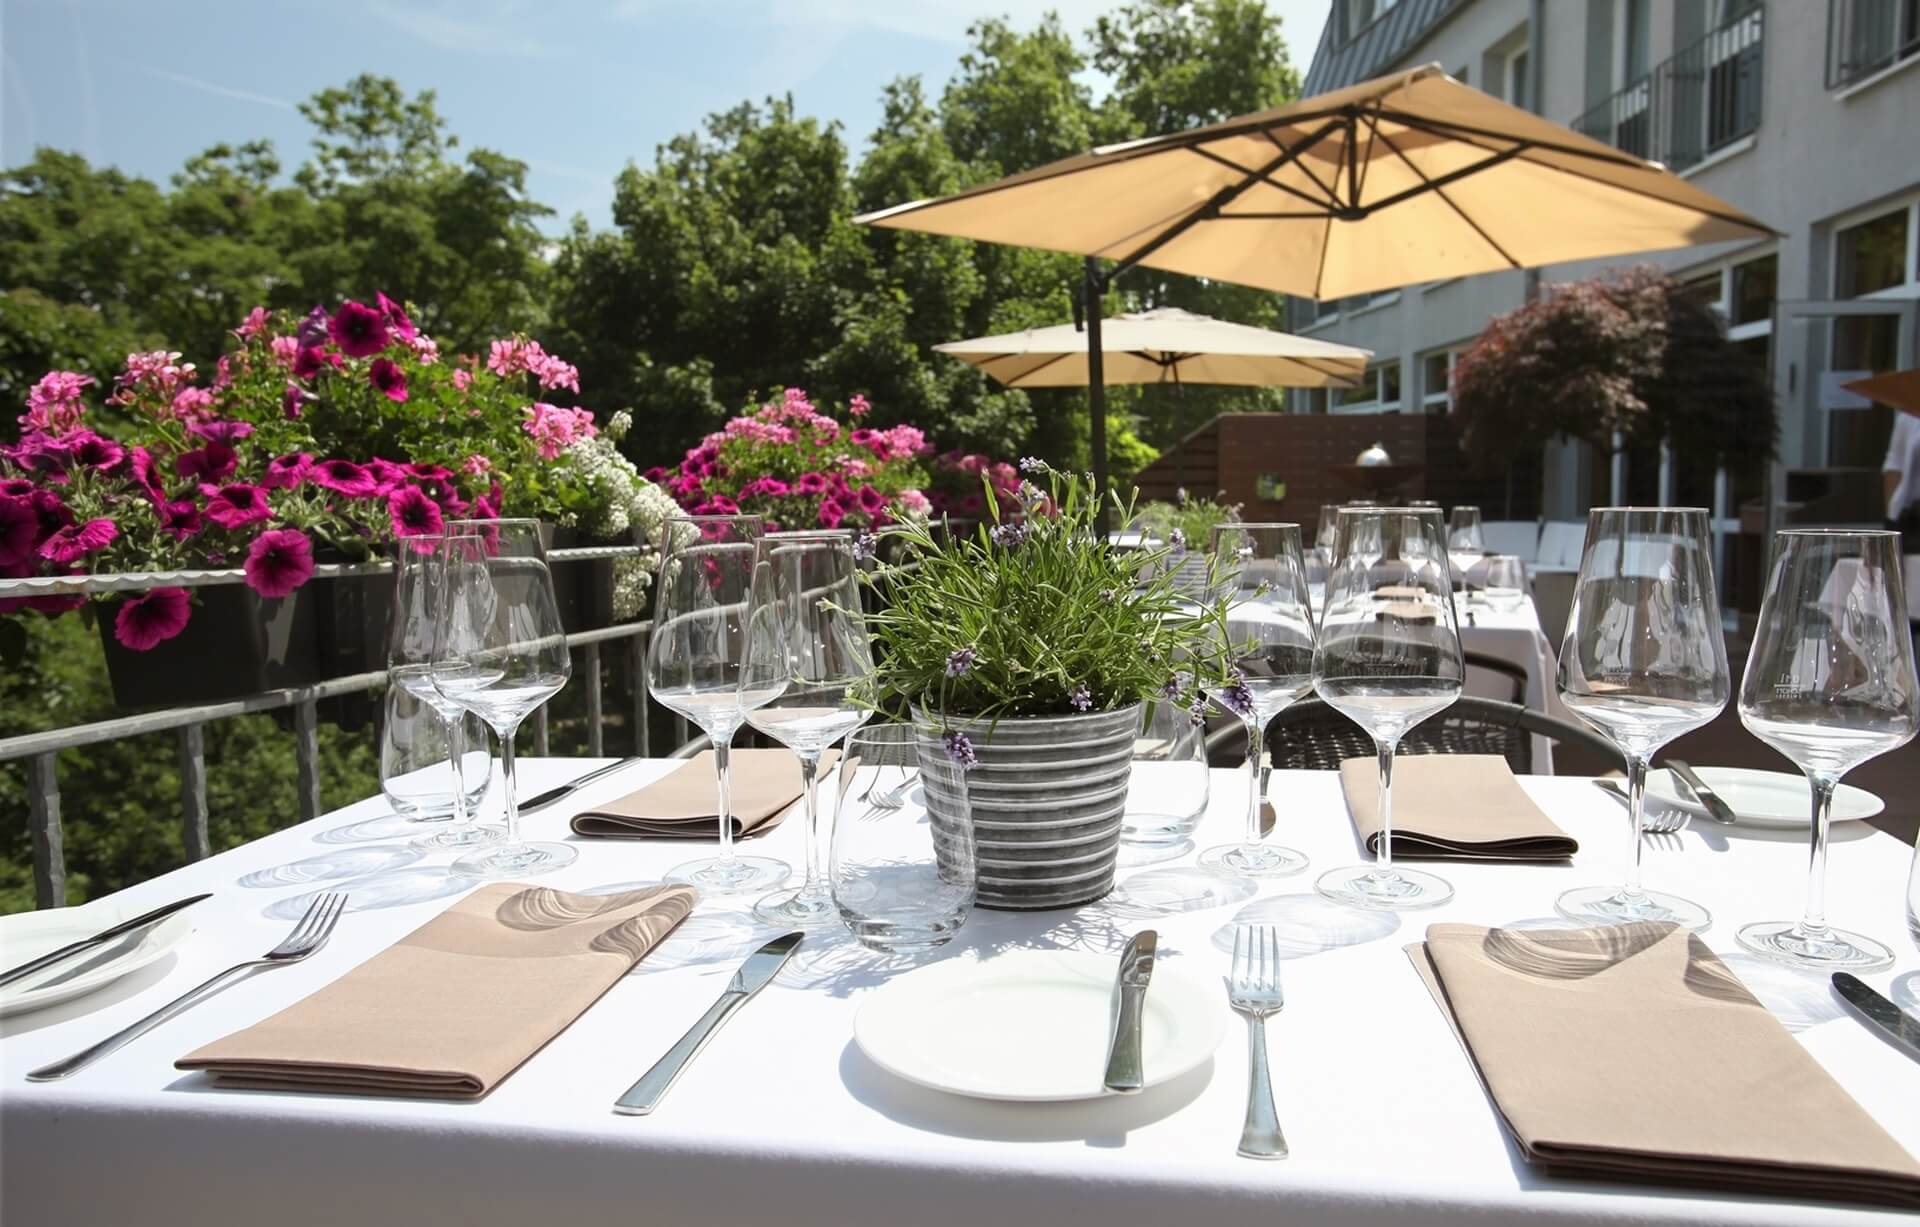 Die Restaurant Terrasse im Parkhotel Landau Pfalz bietet Event Catering.